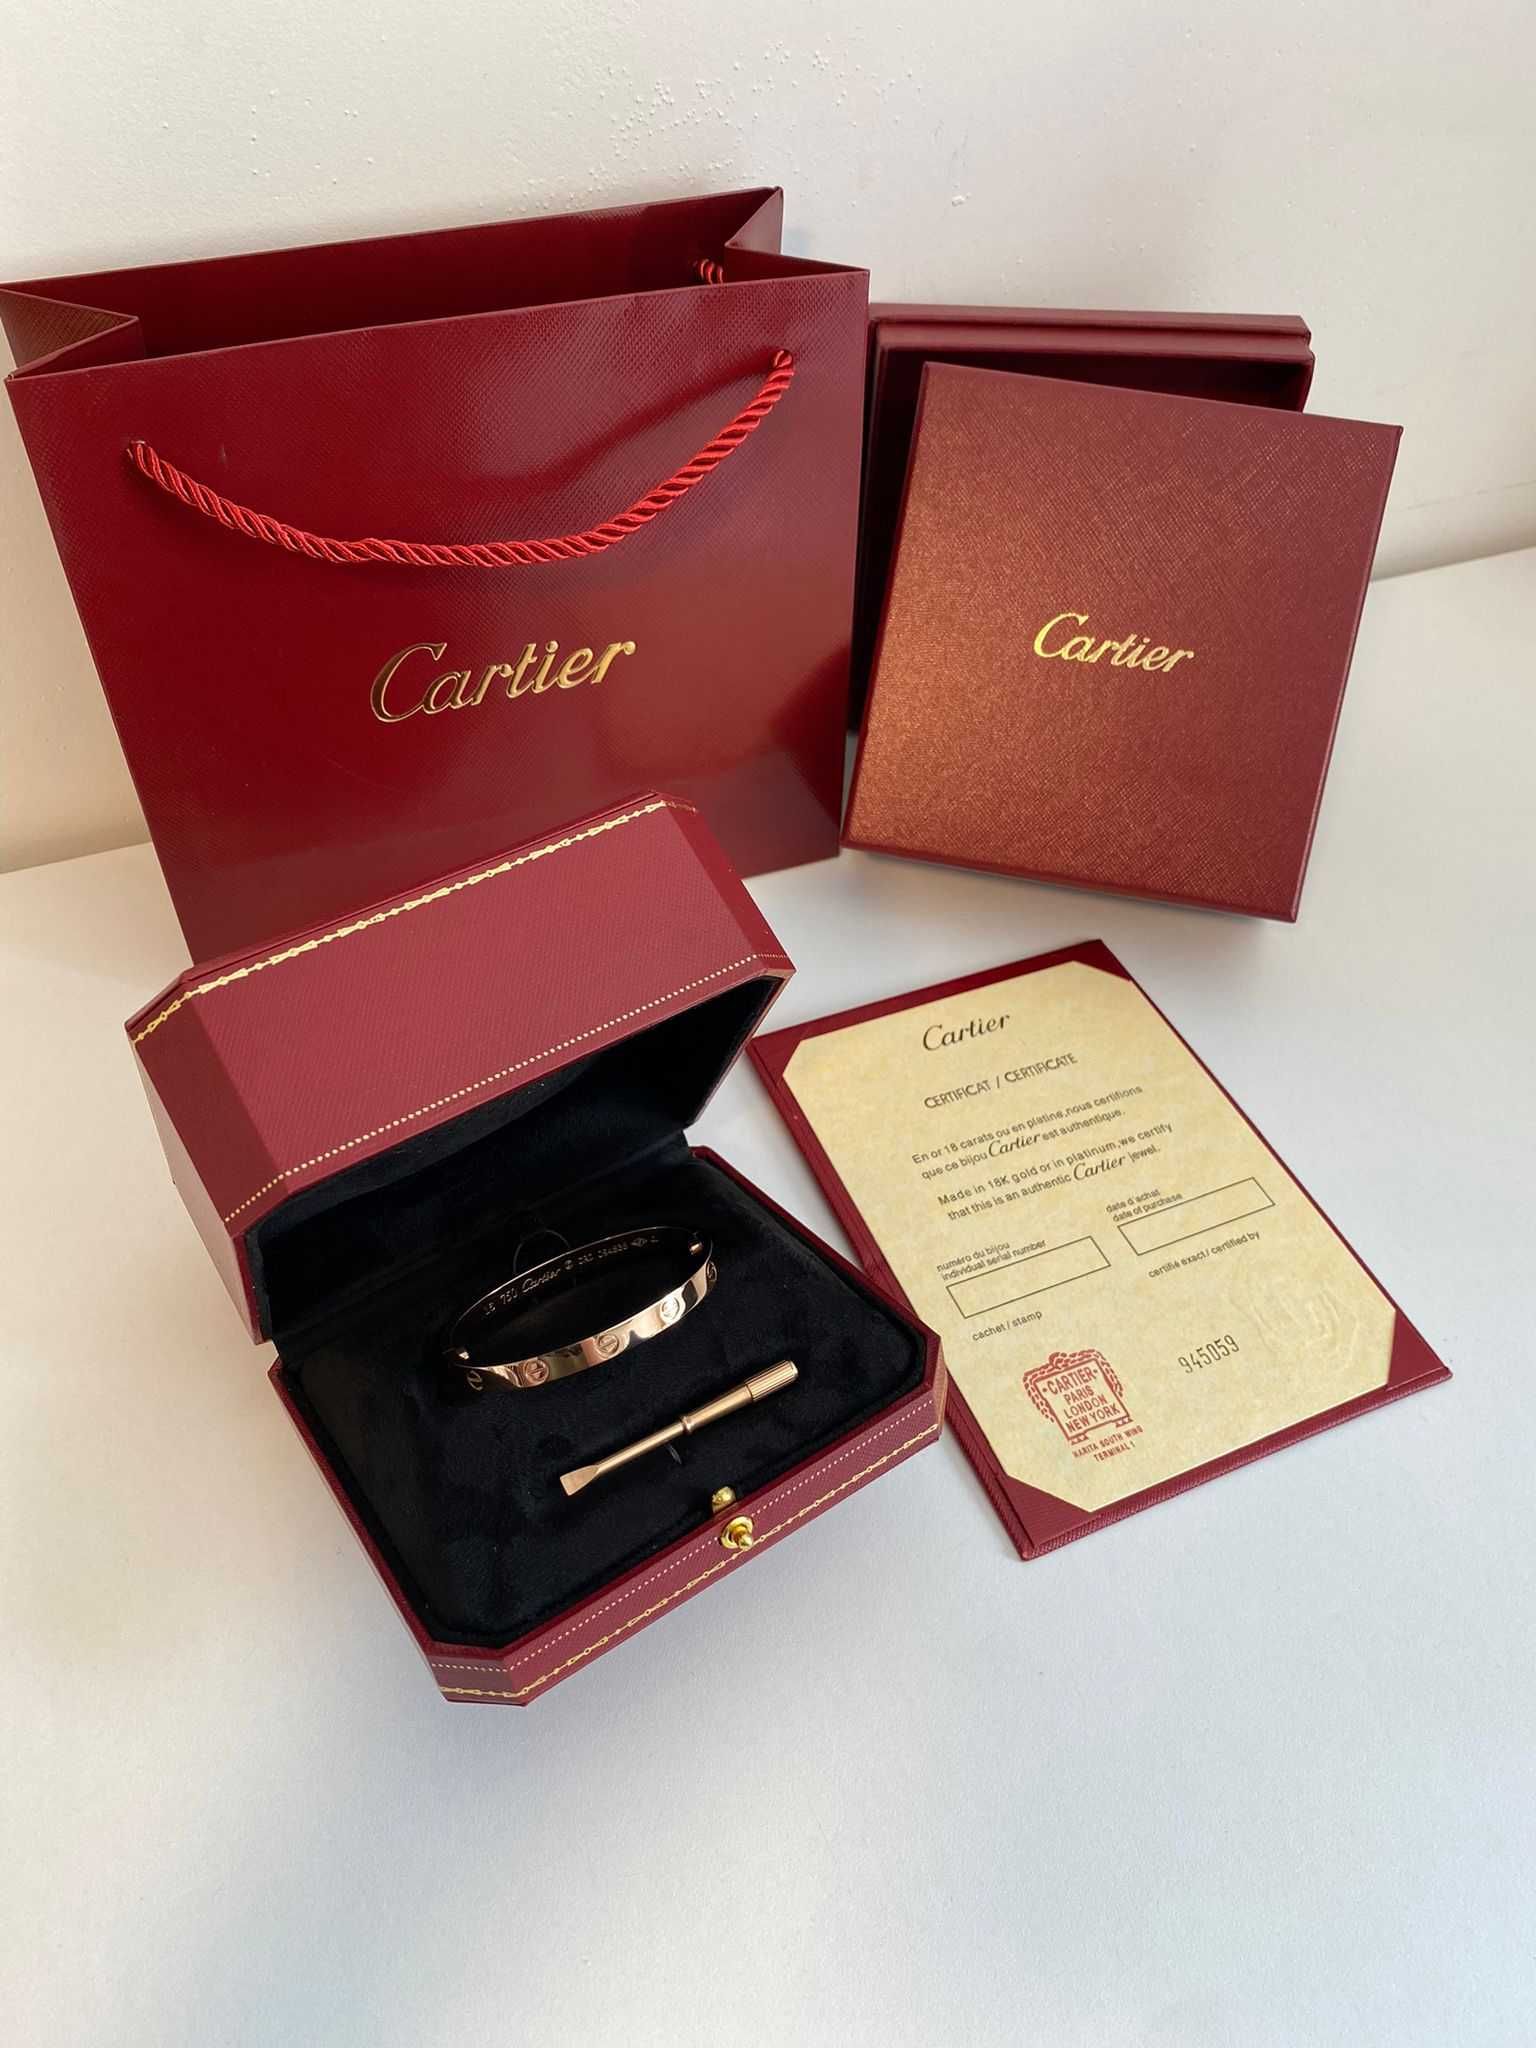 Brățară Cartier LOVE 19 Rose Gold 24K cu cutie